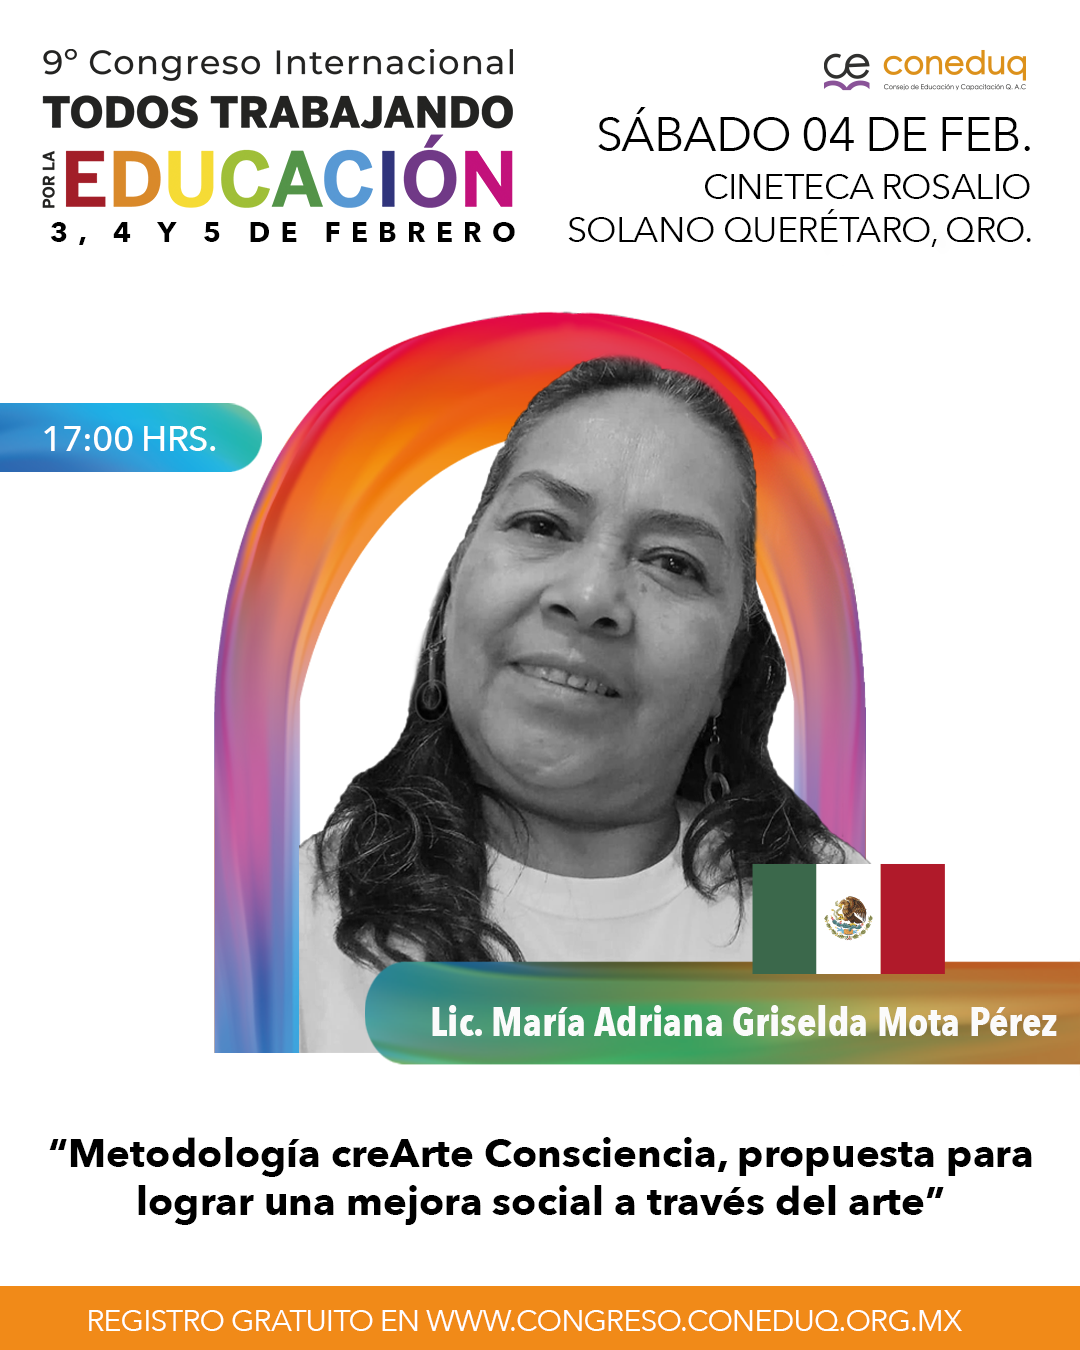 Lic. María Adriana Griselda Mota Pérez